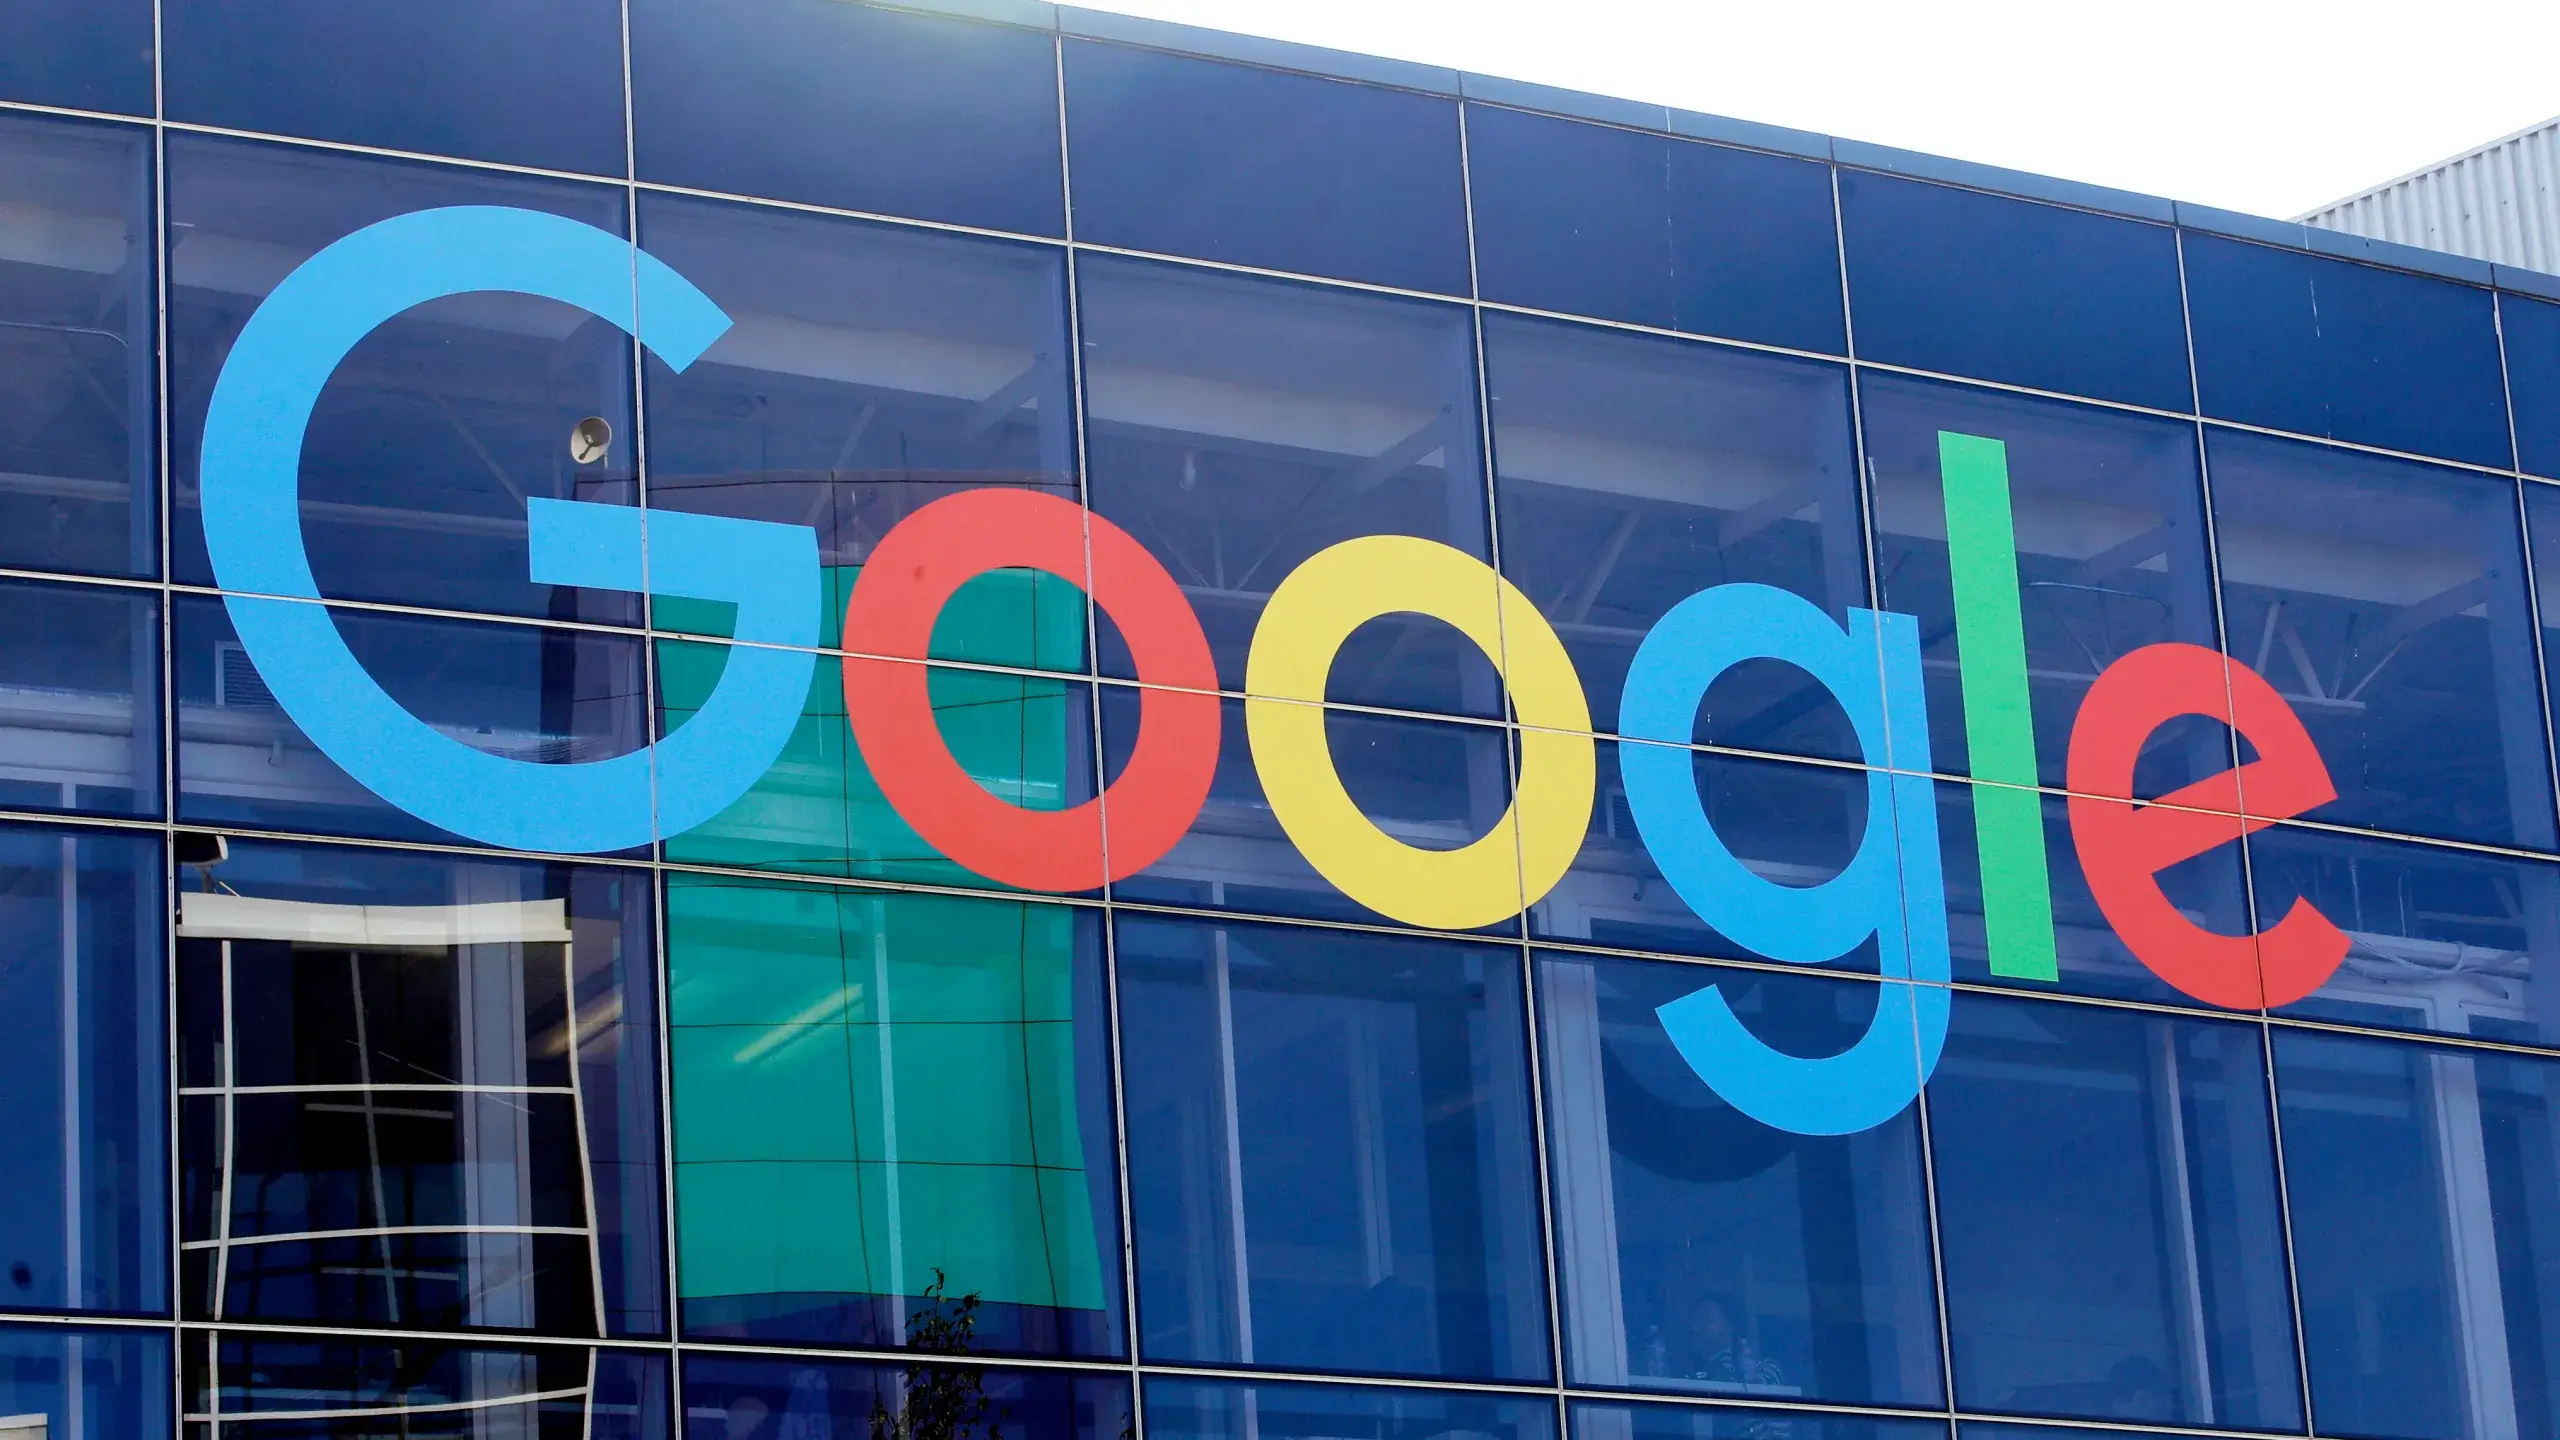 Google Settles Landmark Consumer Privacy Lawsuit Over Alleged Secret Tracking